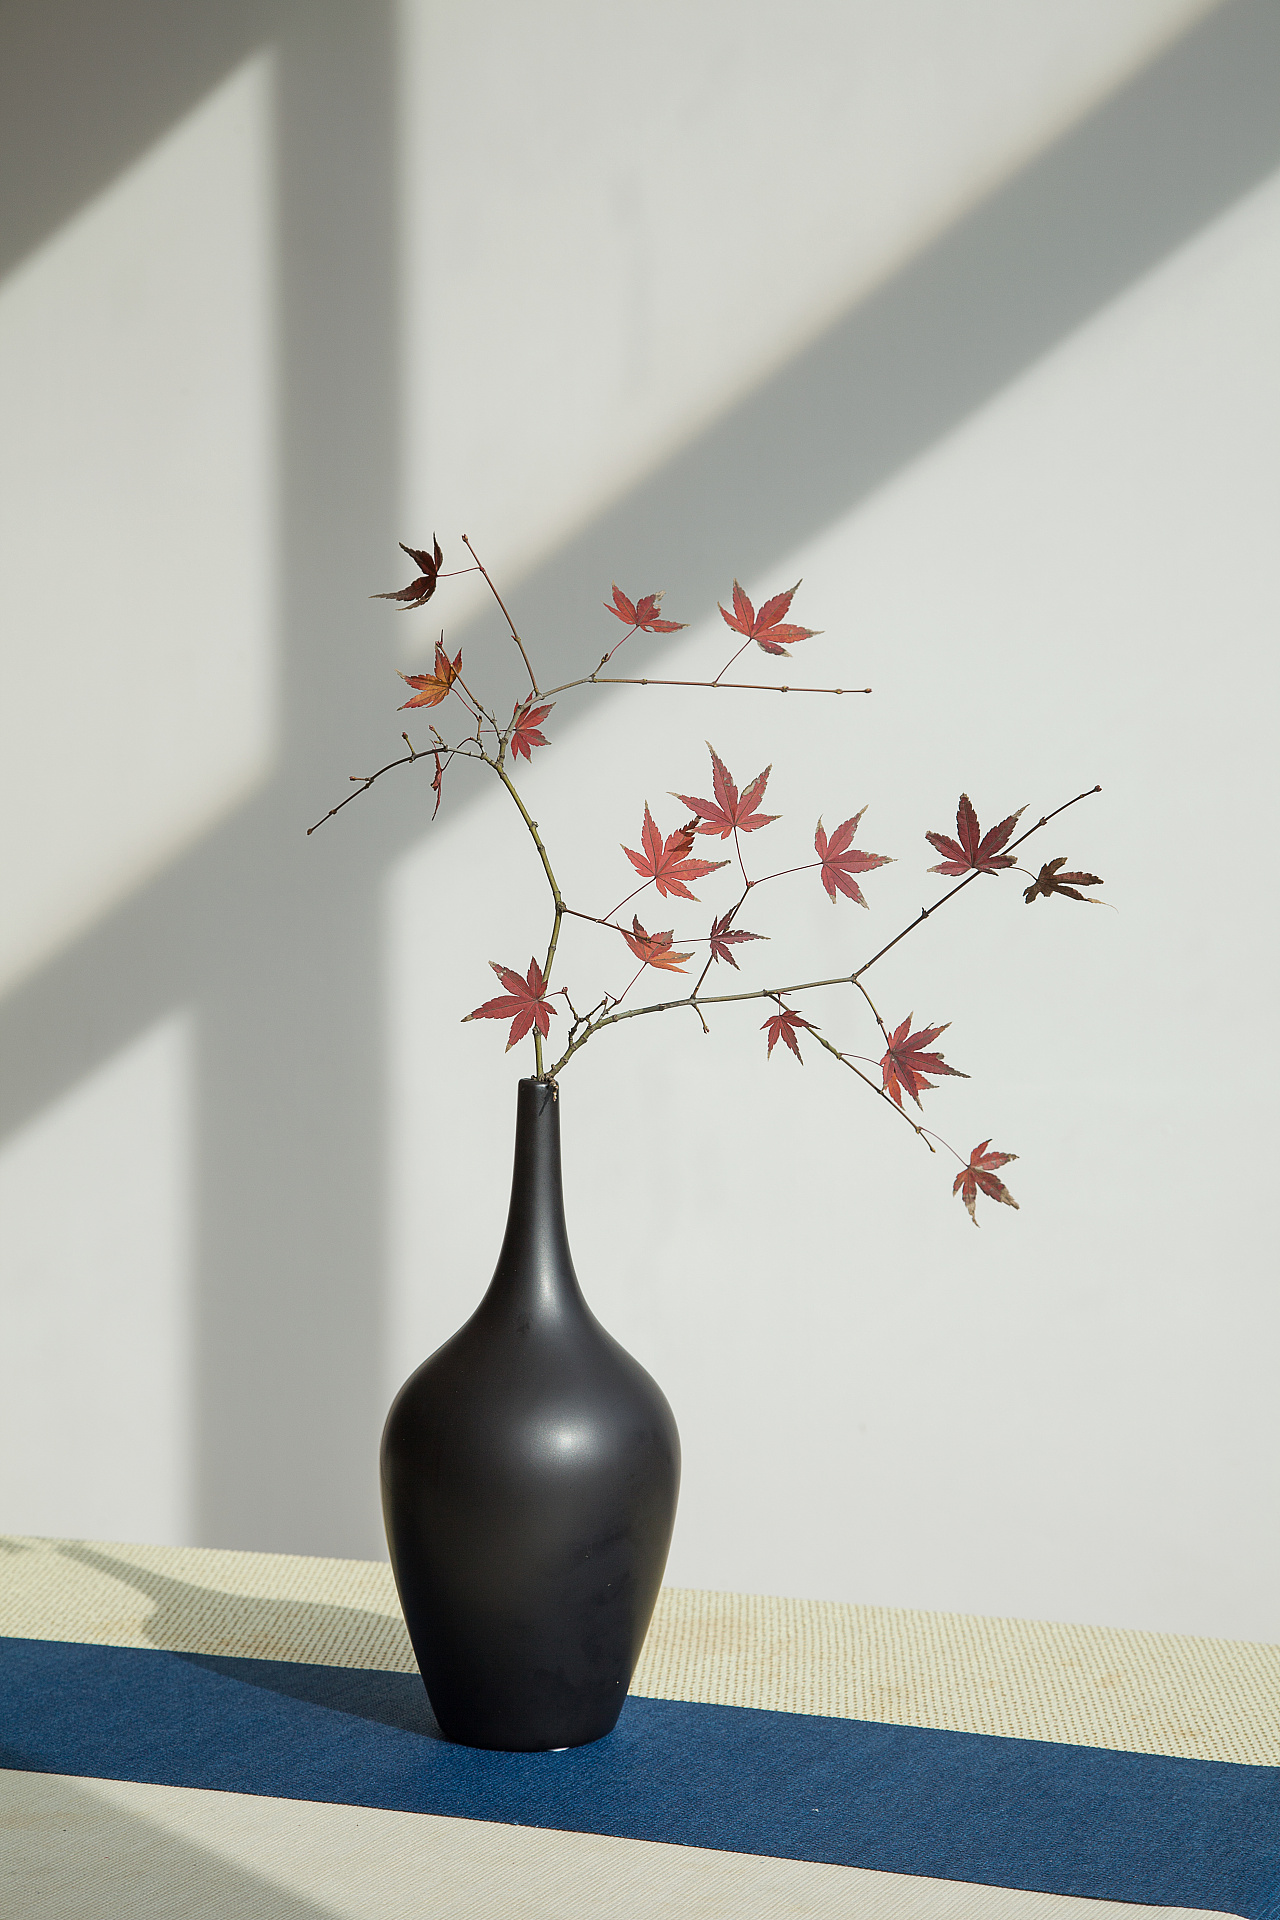 盛开的樱花树枝插在花瓶里 3D模型 $10 - .max - Free3D